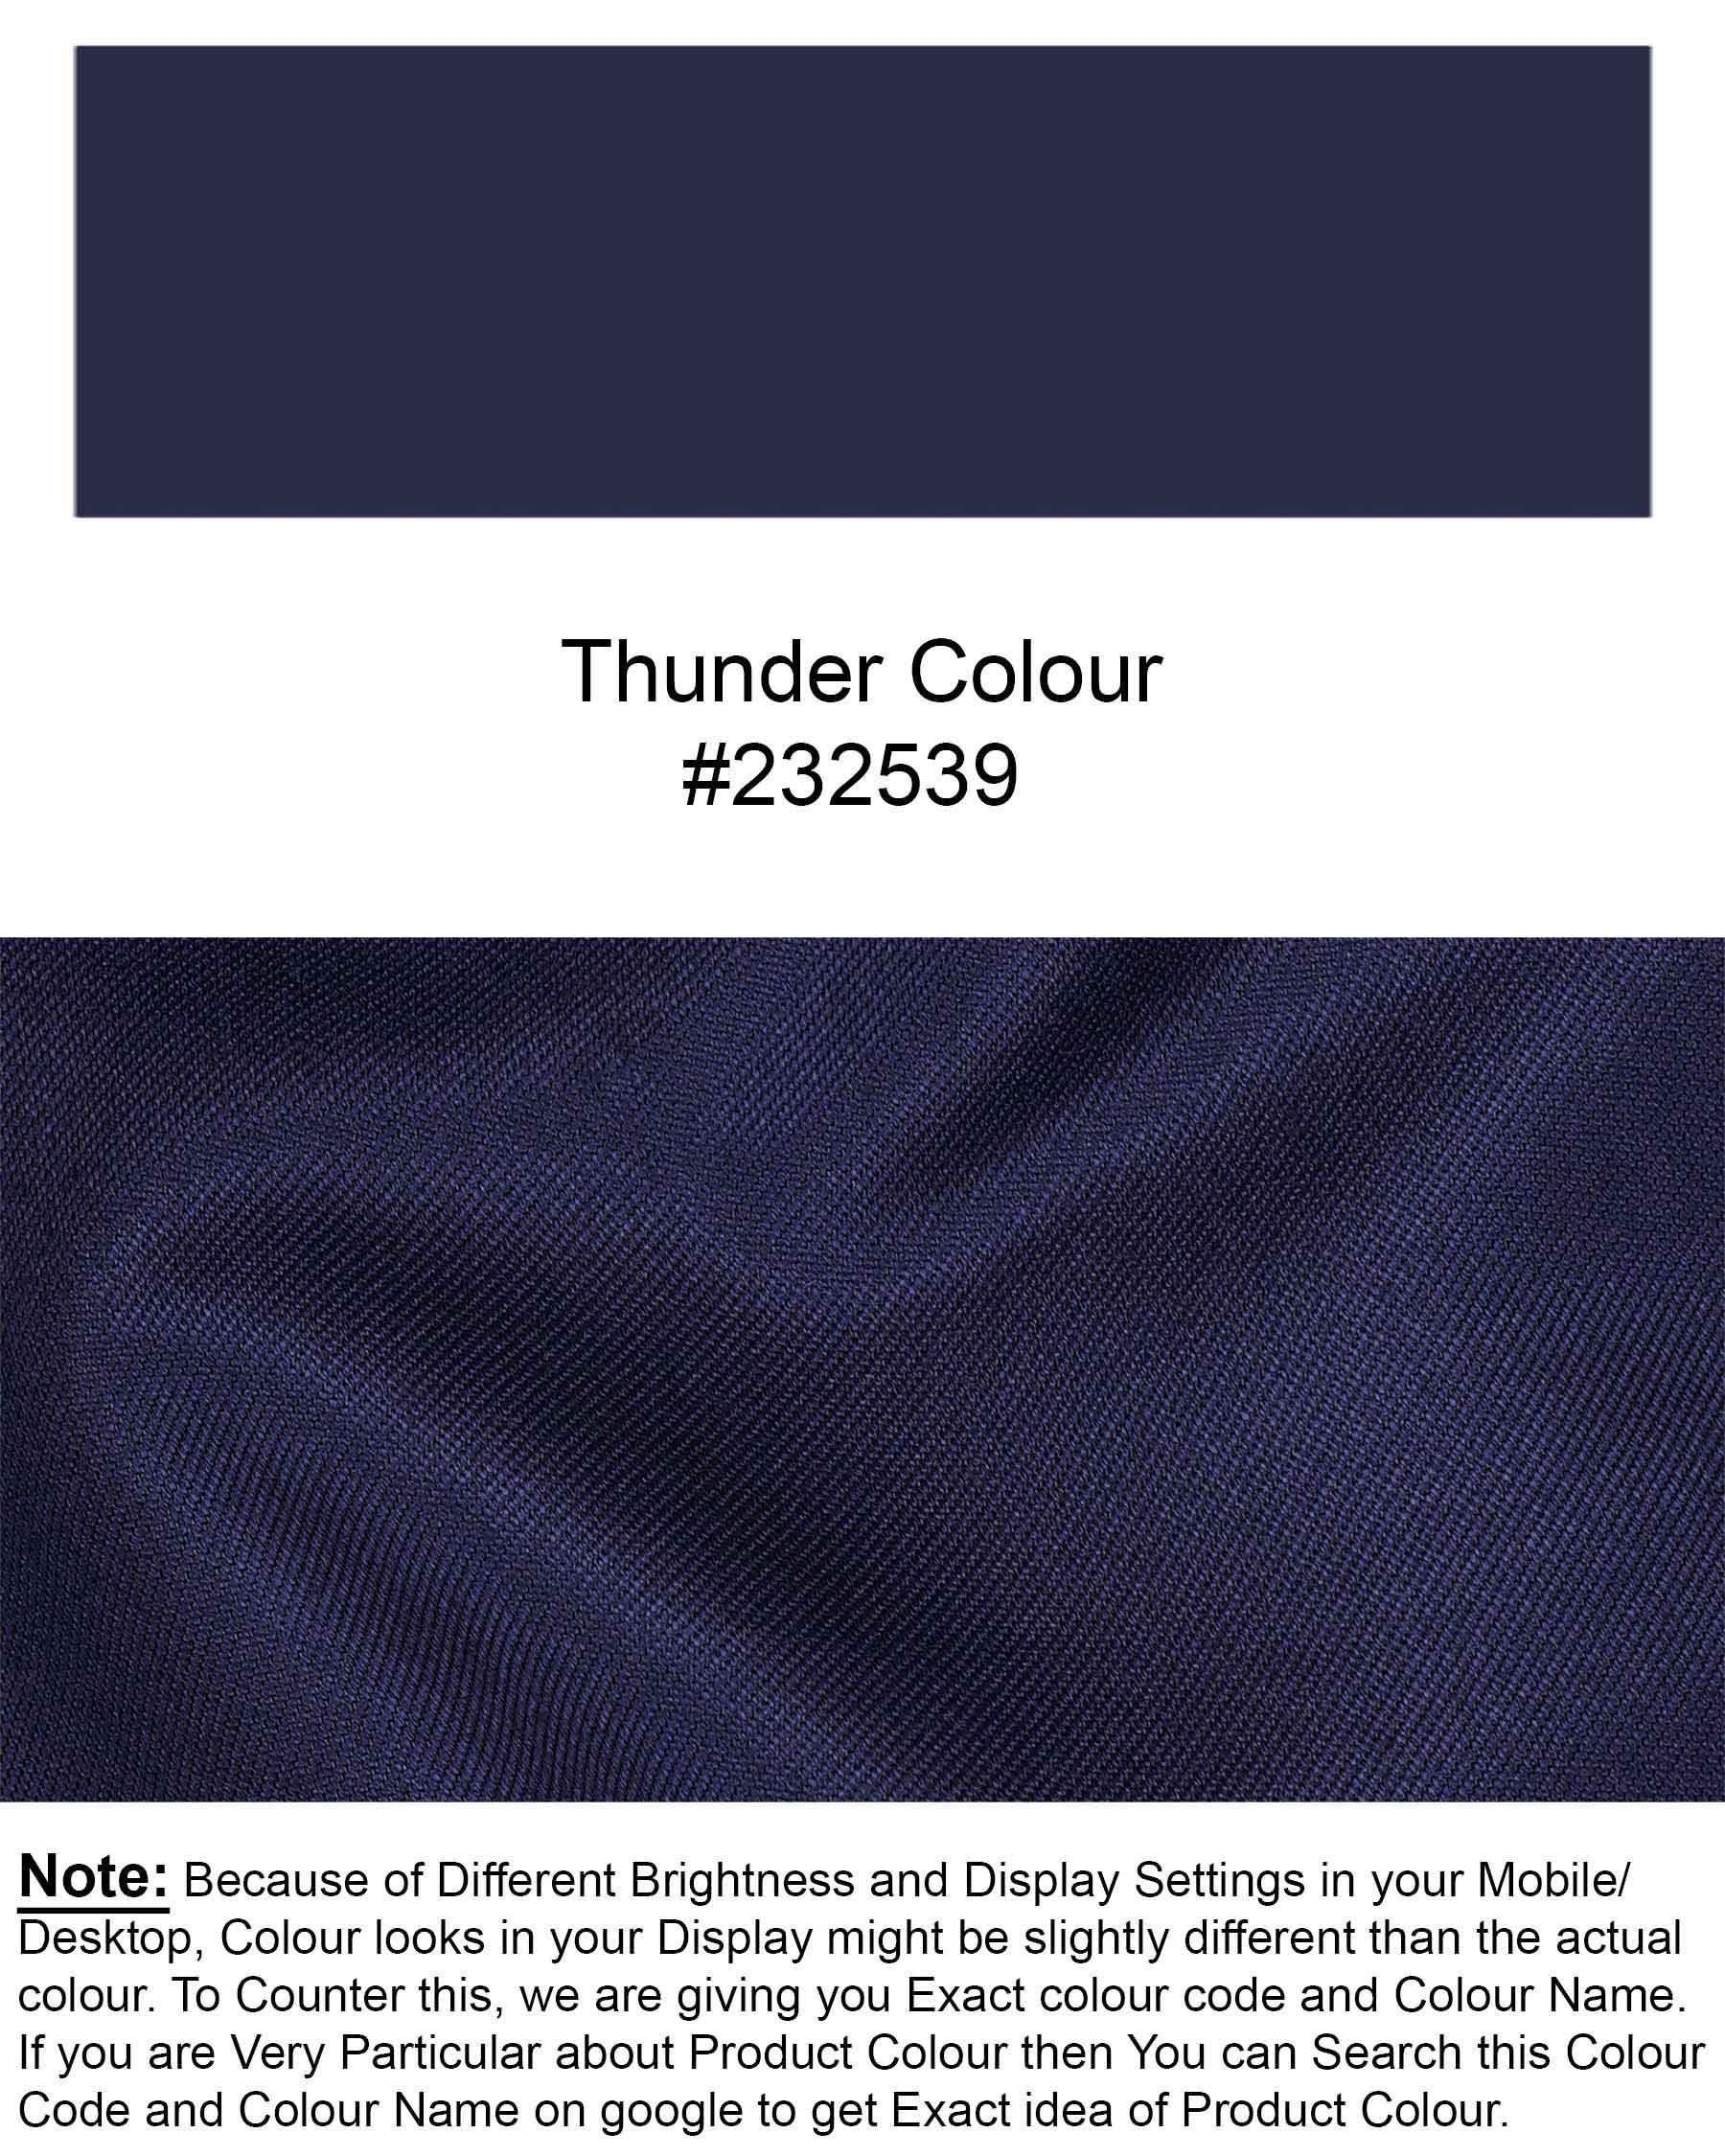 Thunder Blue Solid Waistcoat V1907-36, V1907-38, V1907-40, V1907-42, V1907-44, V1907-46, V1907-48, V1907-50, V1907-52, V1907-54, V1907-56, V1907-58, V1907-60